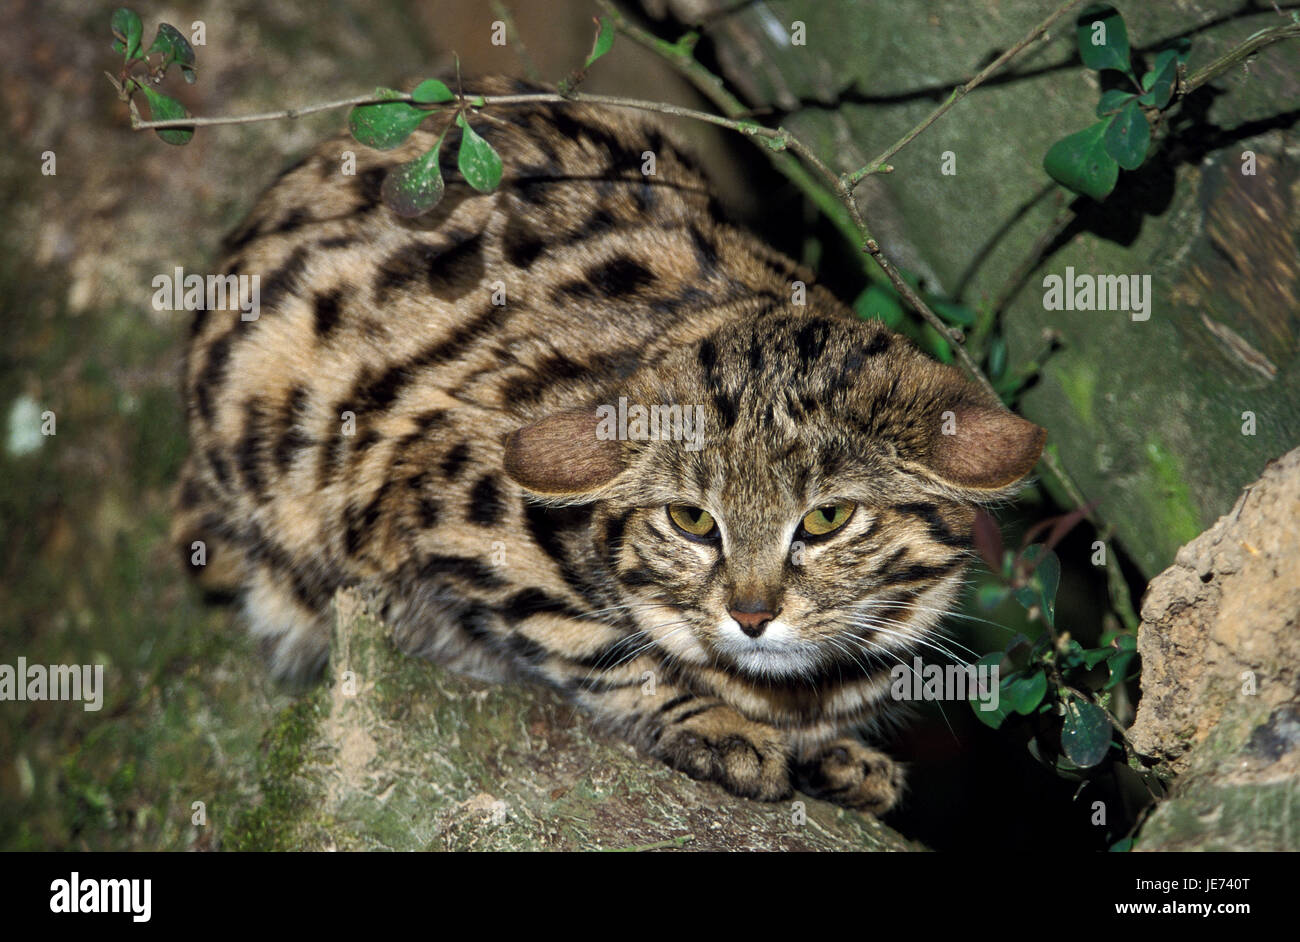 Pie Negro gato reside en una rama, Felis nigripes, Foto de stock